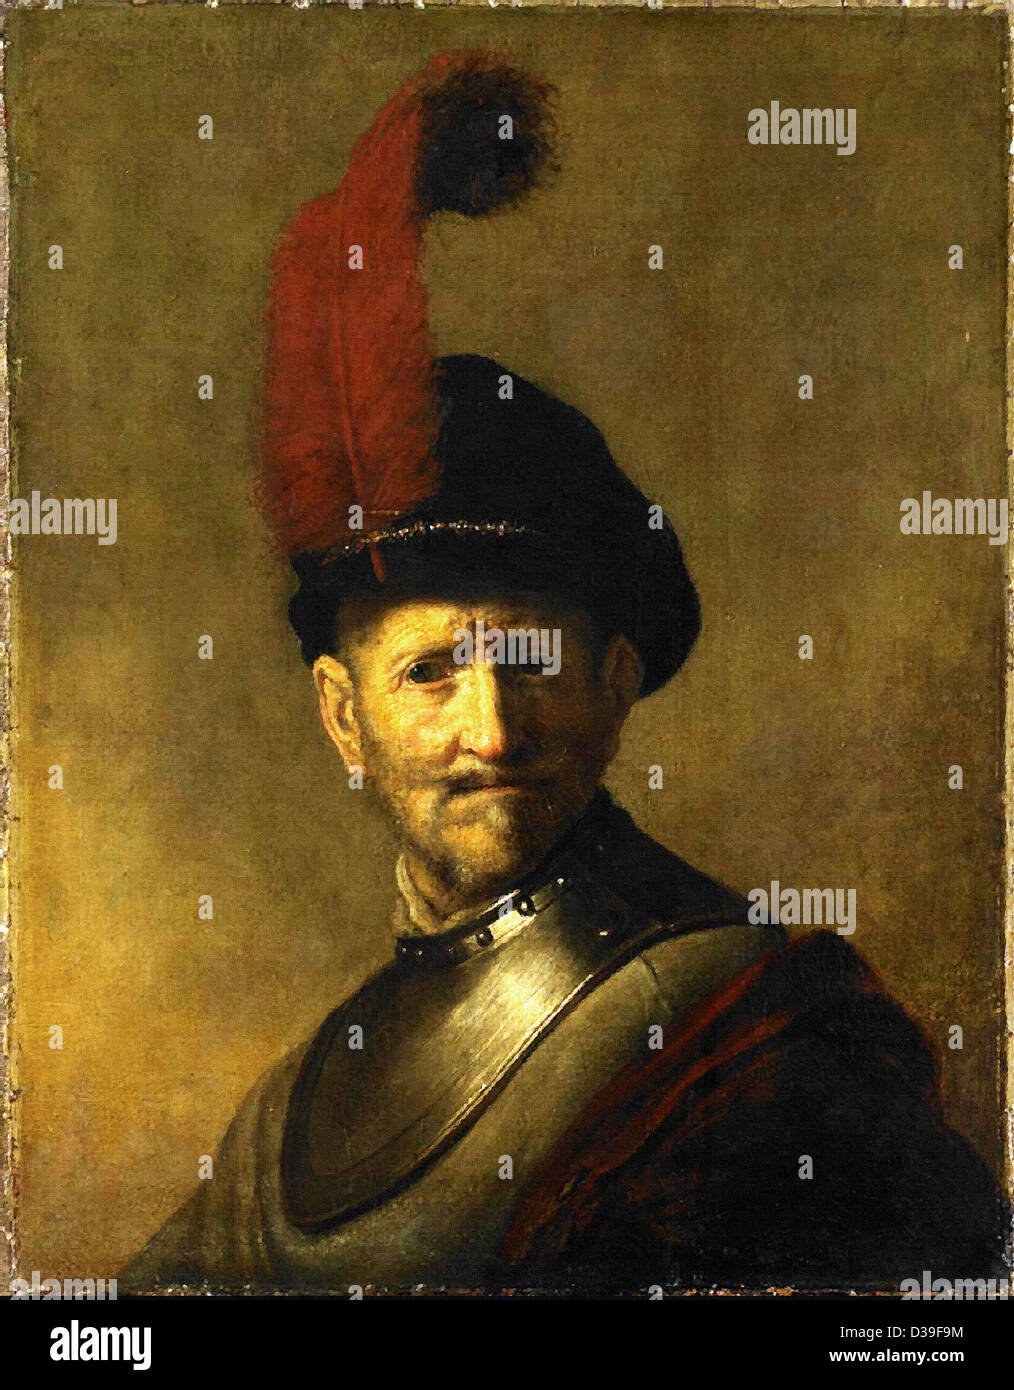 Rembrandt van Rijn, un vieil homme en costume militaire (anciennement appelé le père de Rembrandt Portrait). 1630 Huile sur panneau. Baroque. Banque D'Images